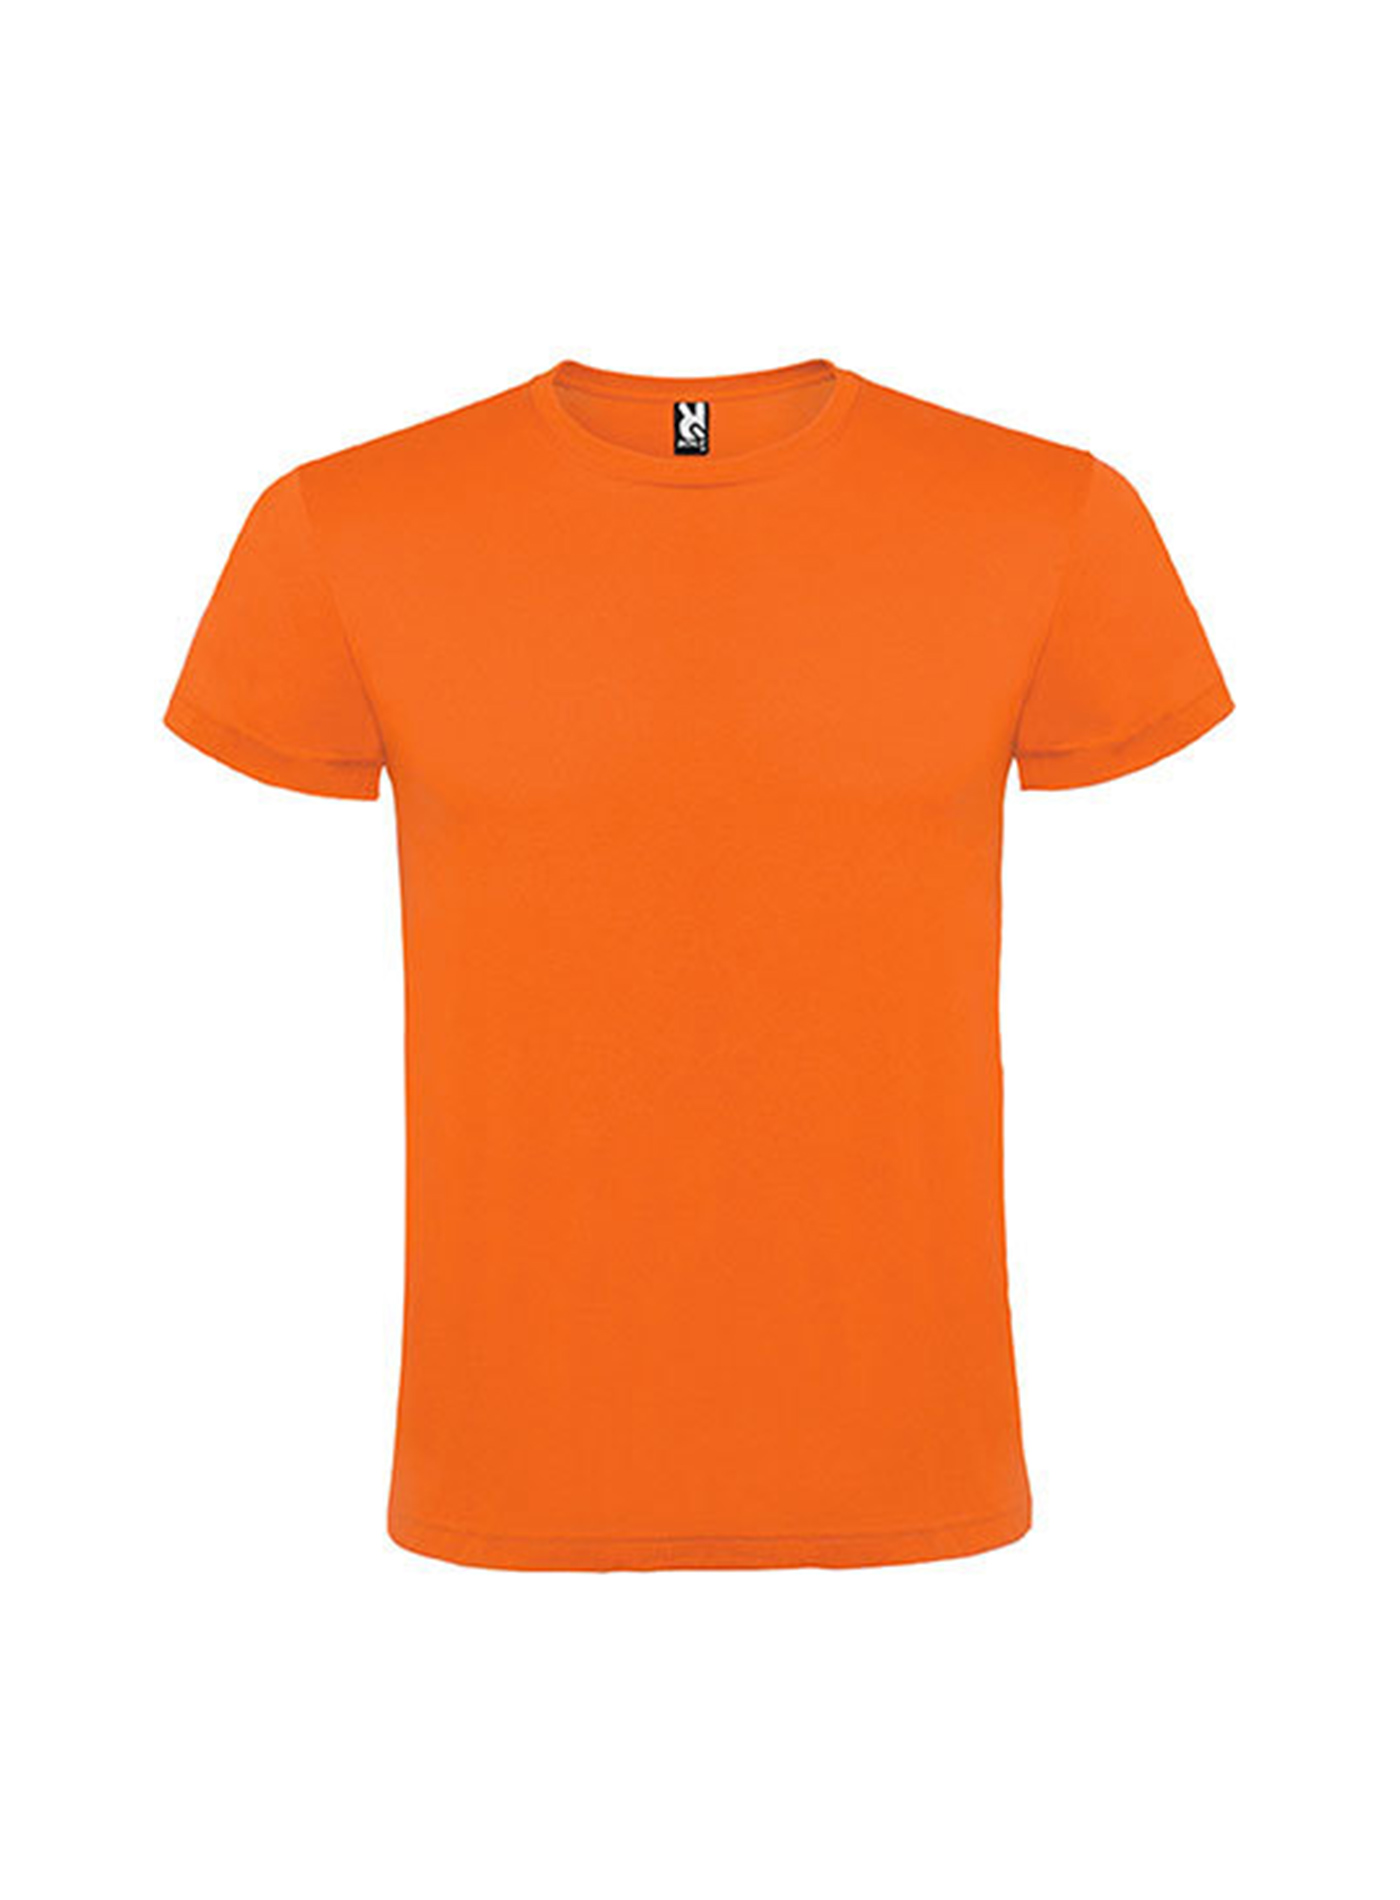 Pánské tričko Roly Atomic - Oranžová S